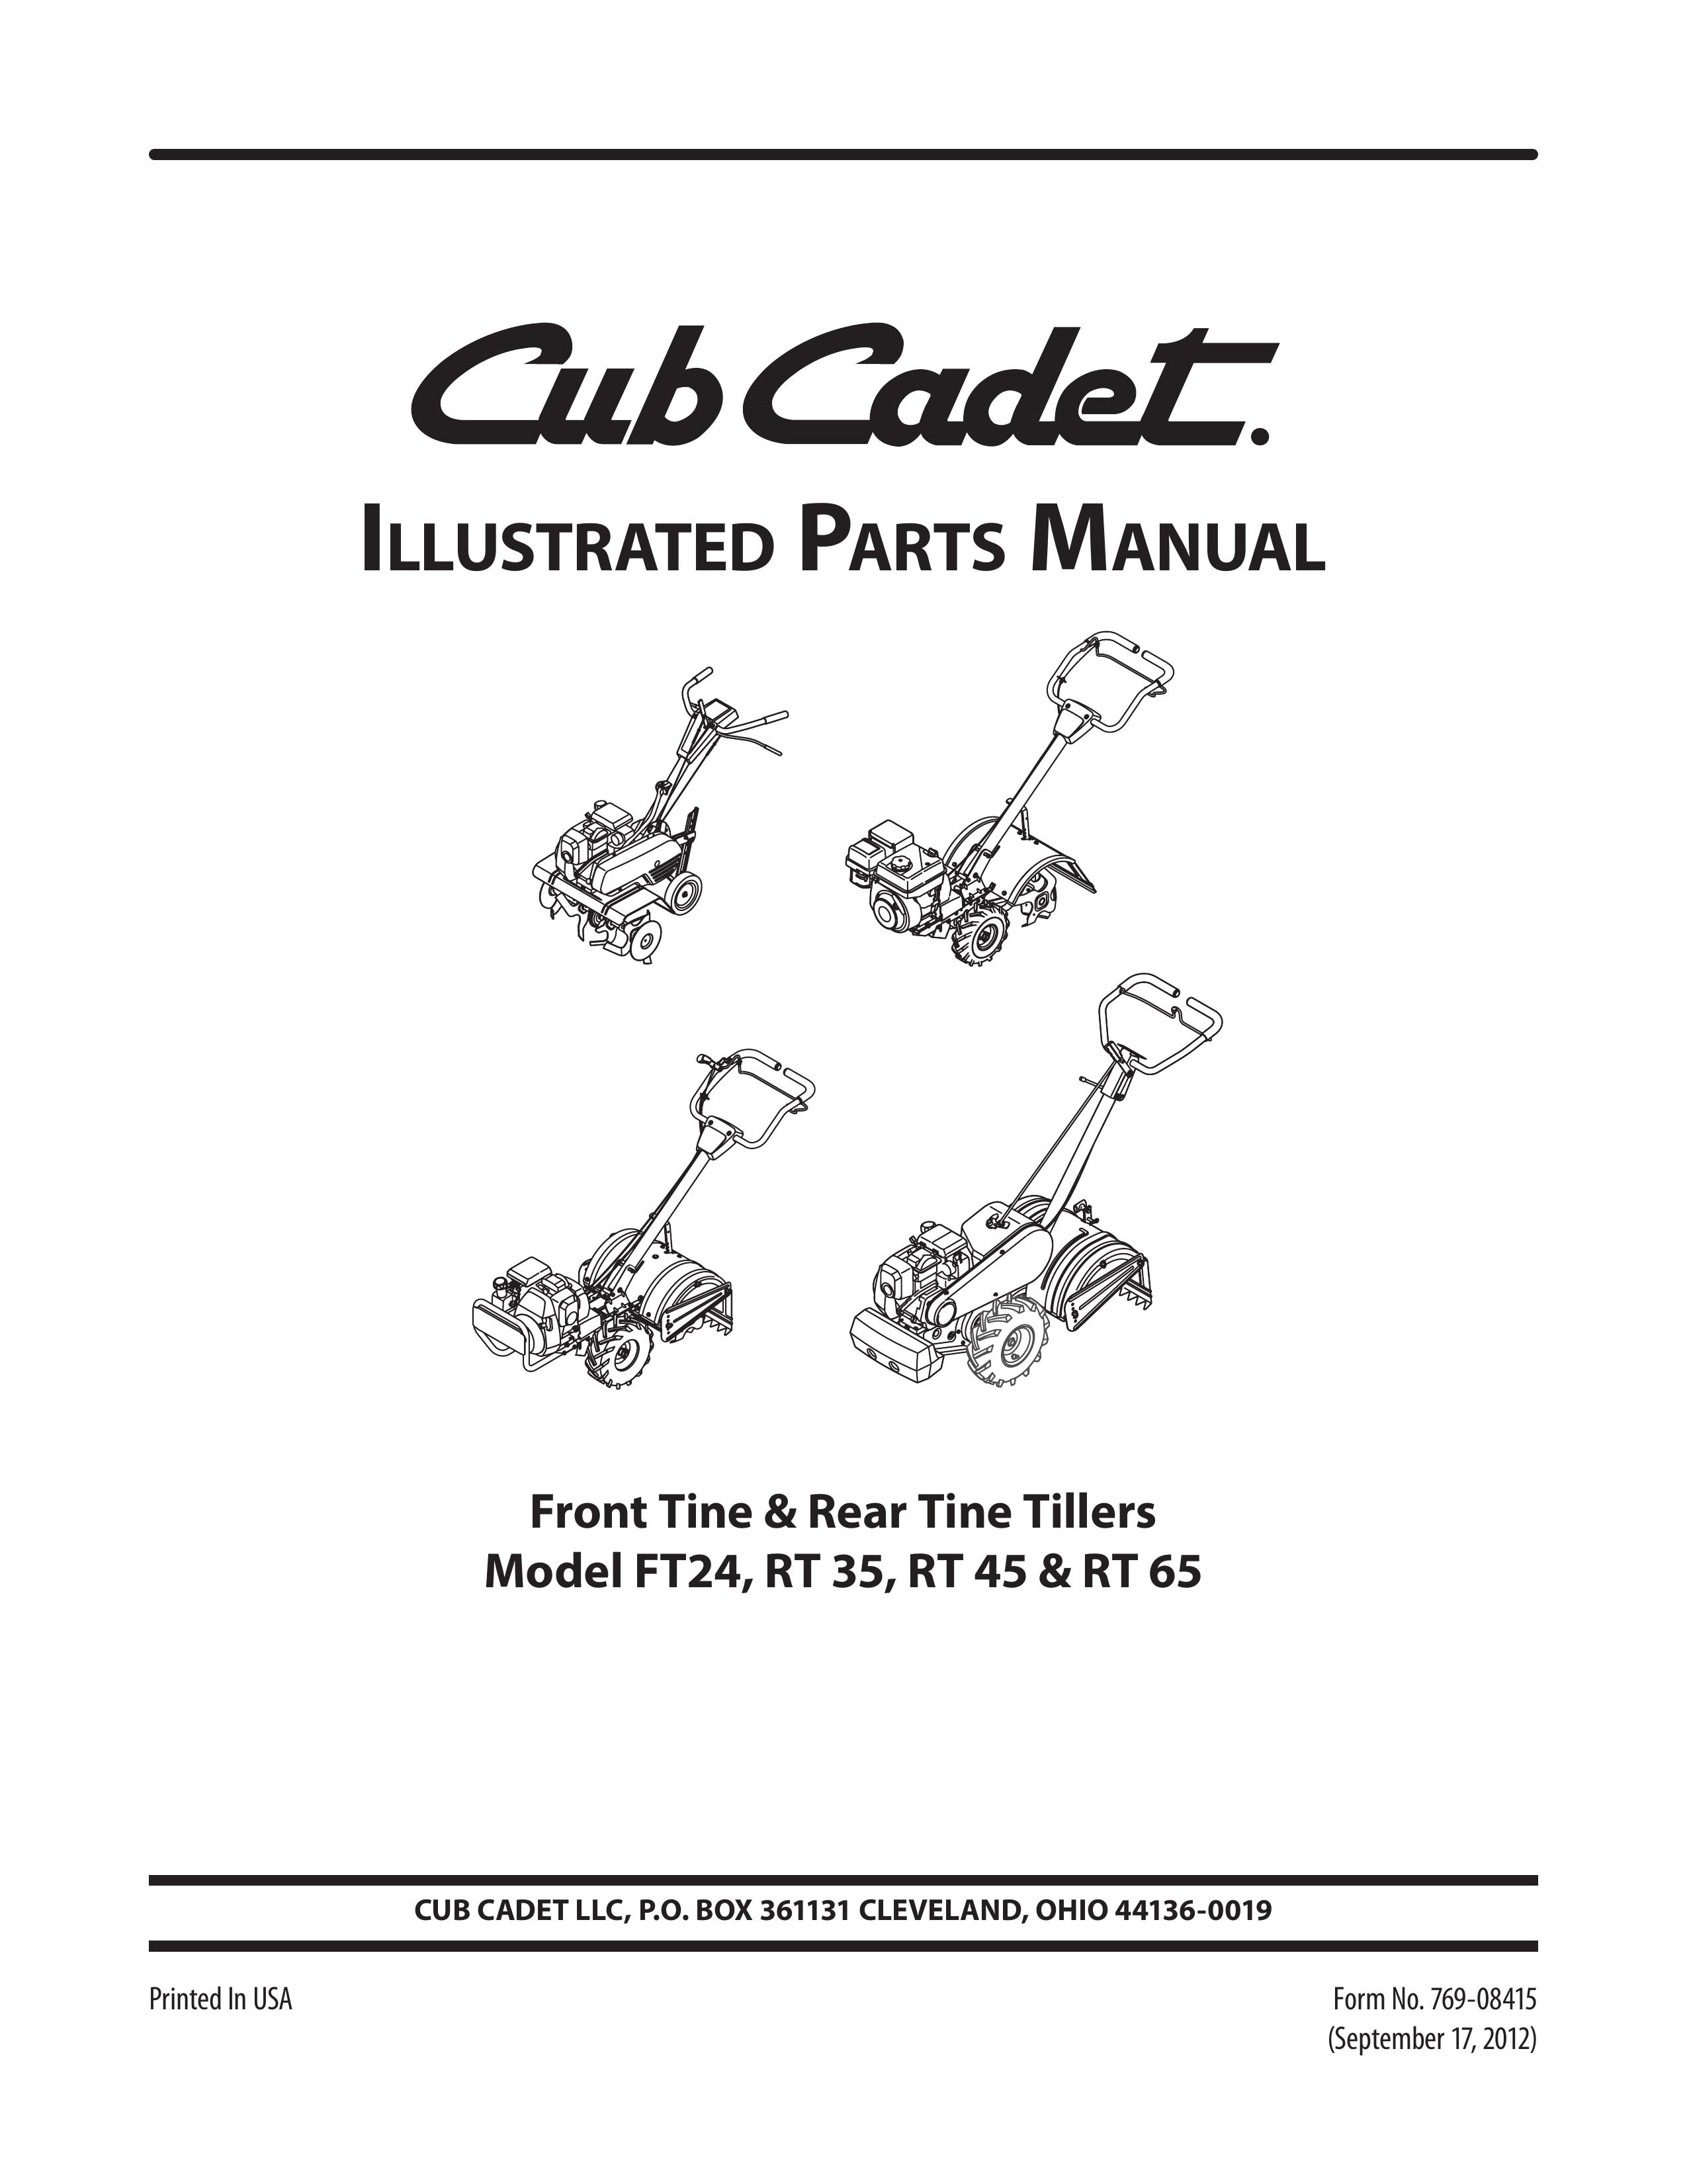 Cub Cadet RT 45 Tiller User Manual